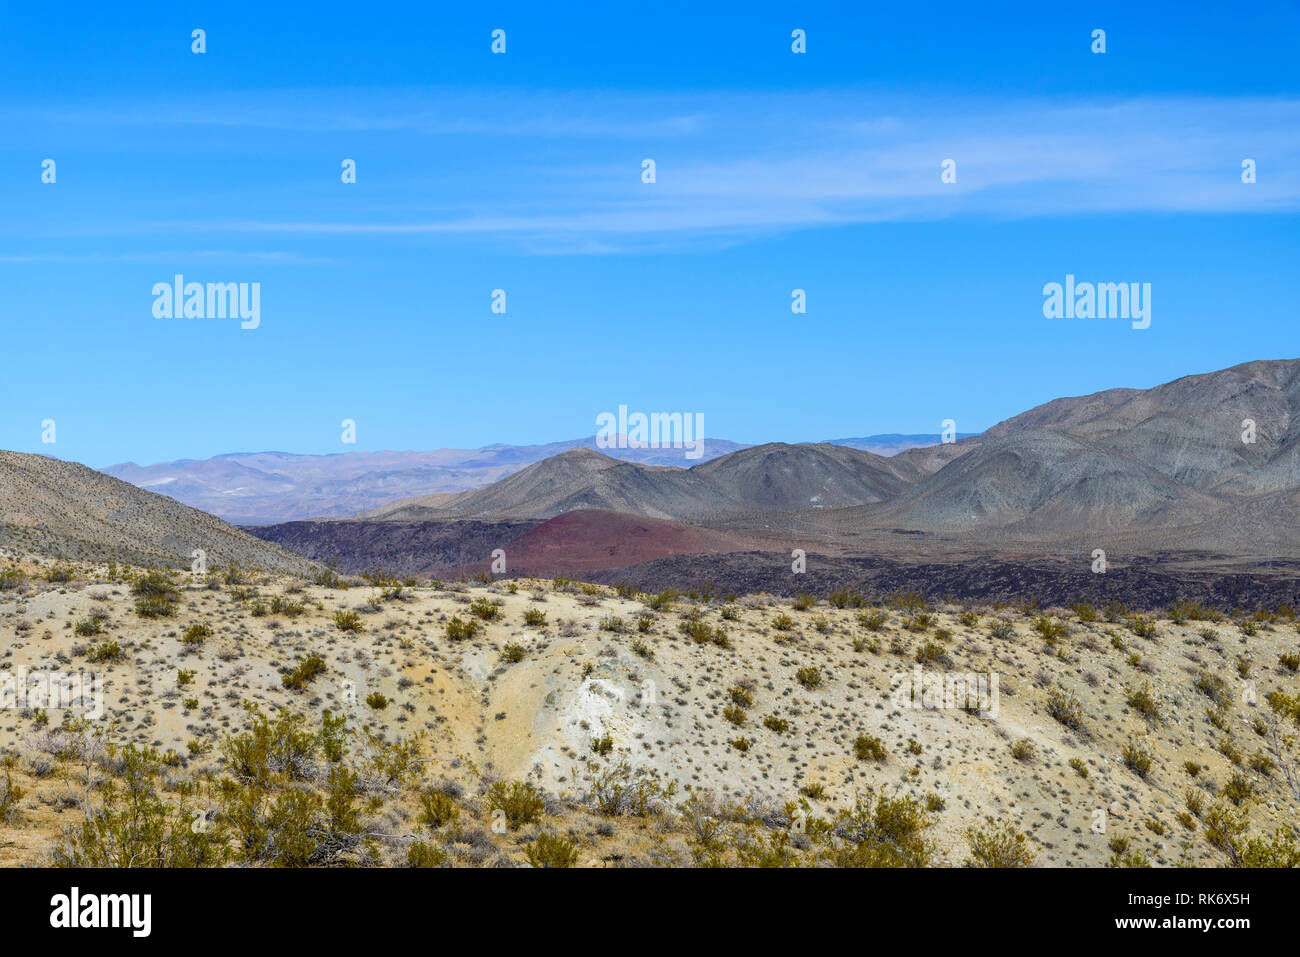 Le caribou des montagnes du désert chaud et sec, rouge et noir hills sous ciel bleu. Peu de végétation. Banque D'Images